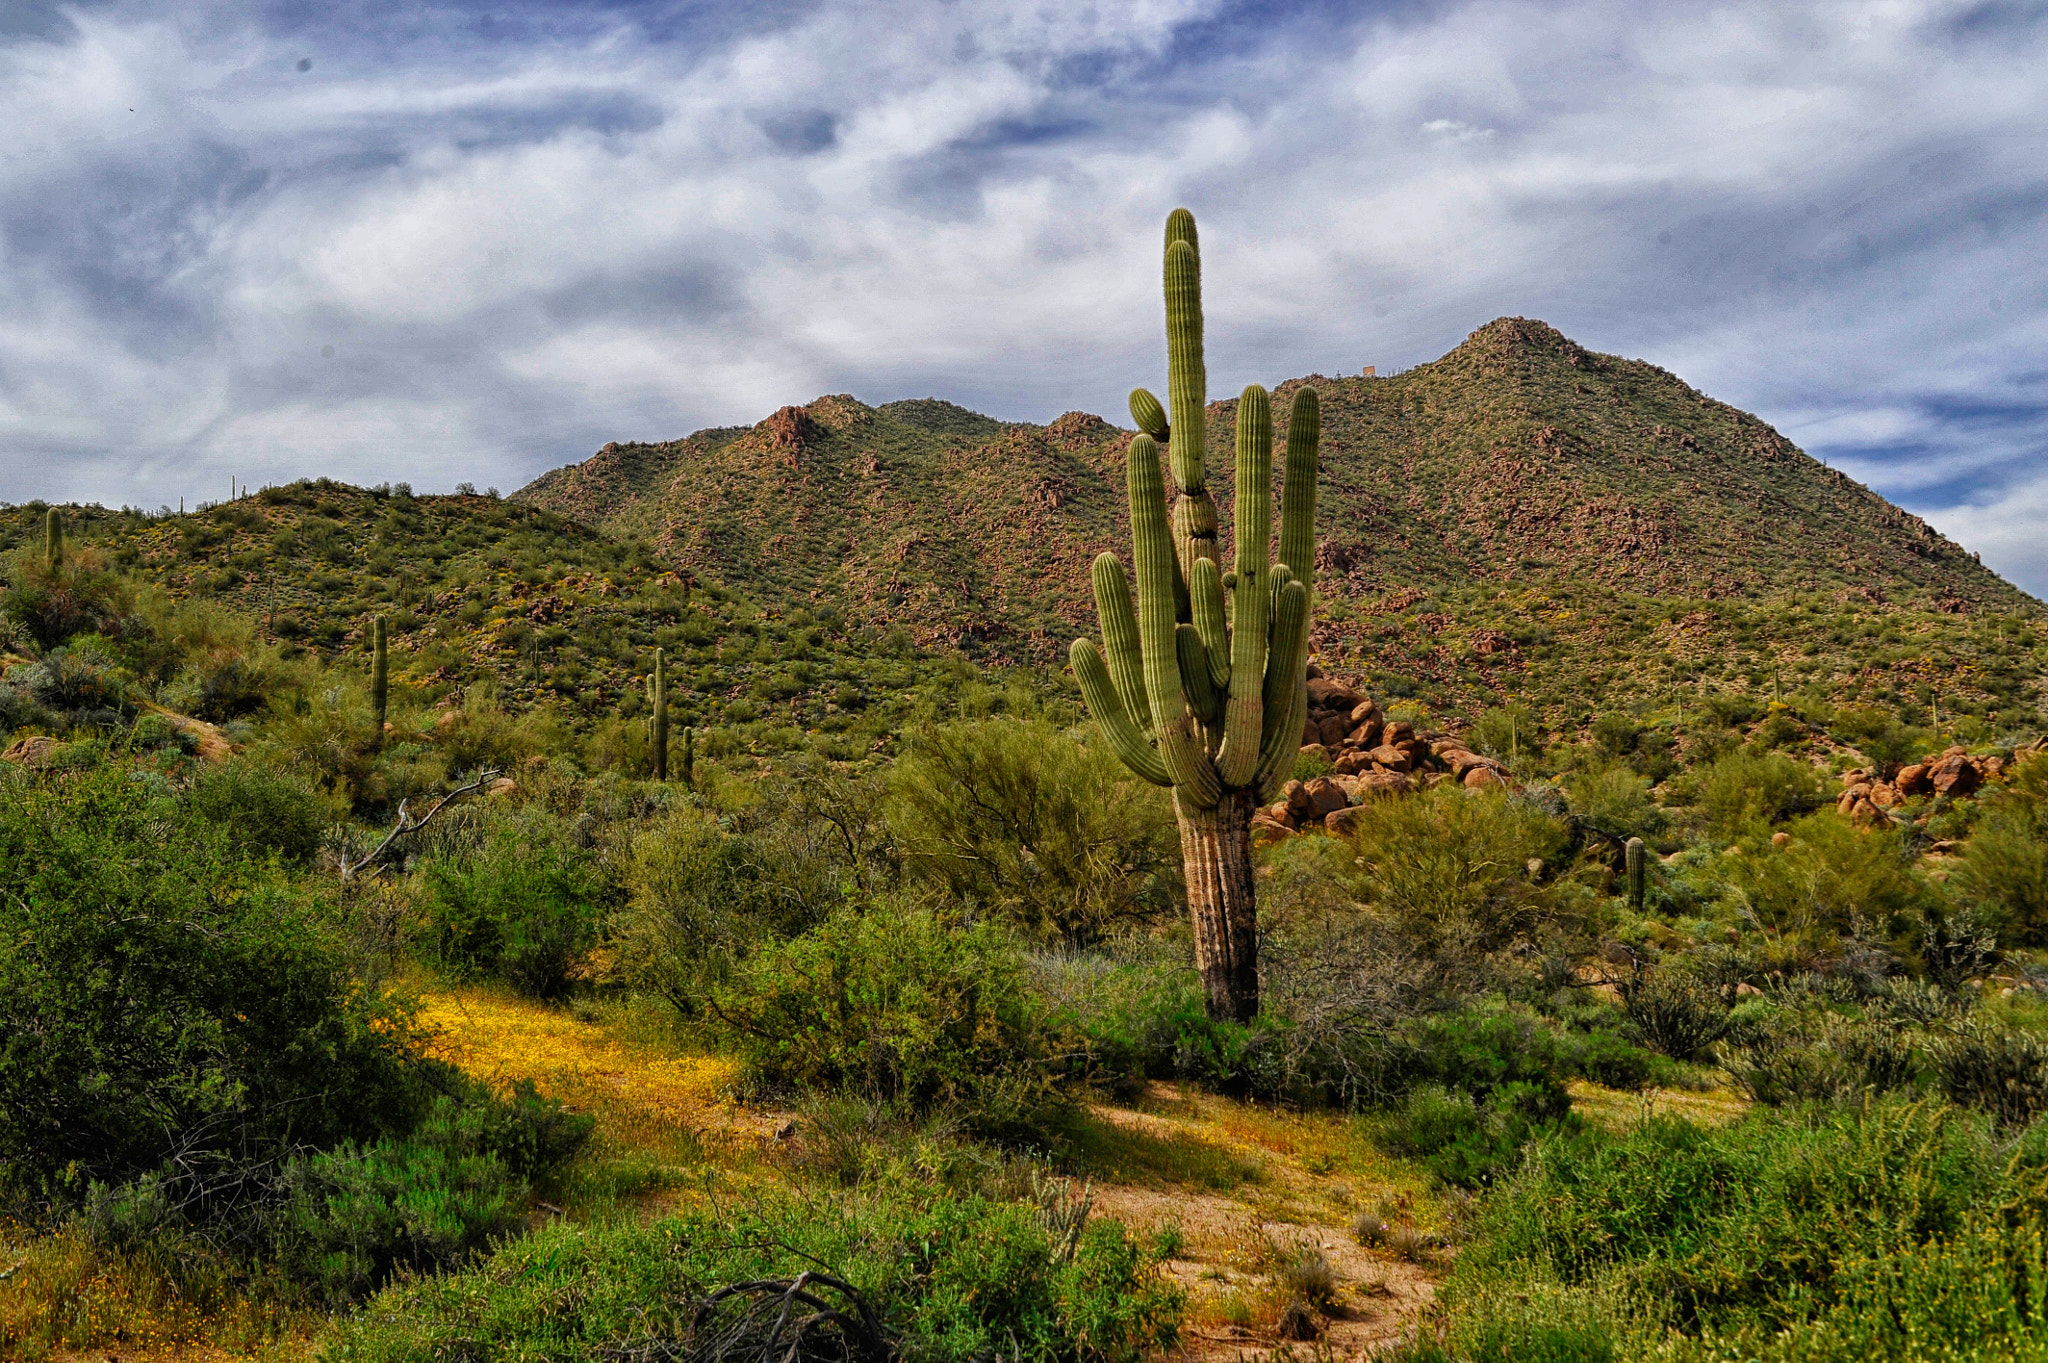 Nikon D700 + AF Zoom-Nikkor 28-85mm f/3.5-4.5 sample photo. Desert spring in arizona photography